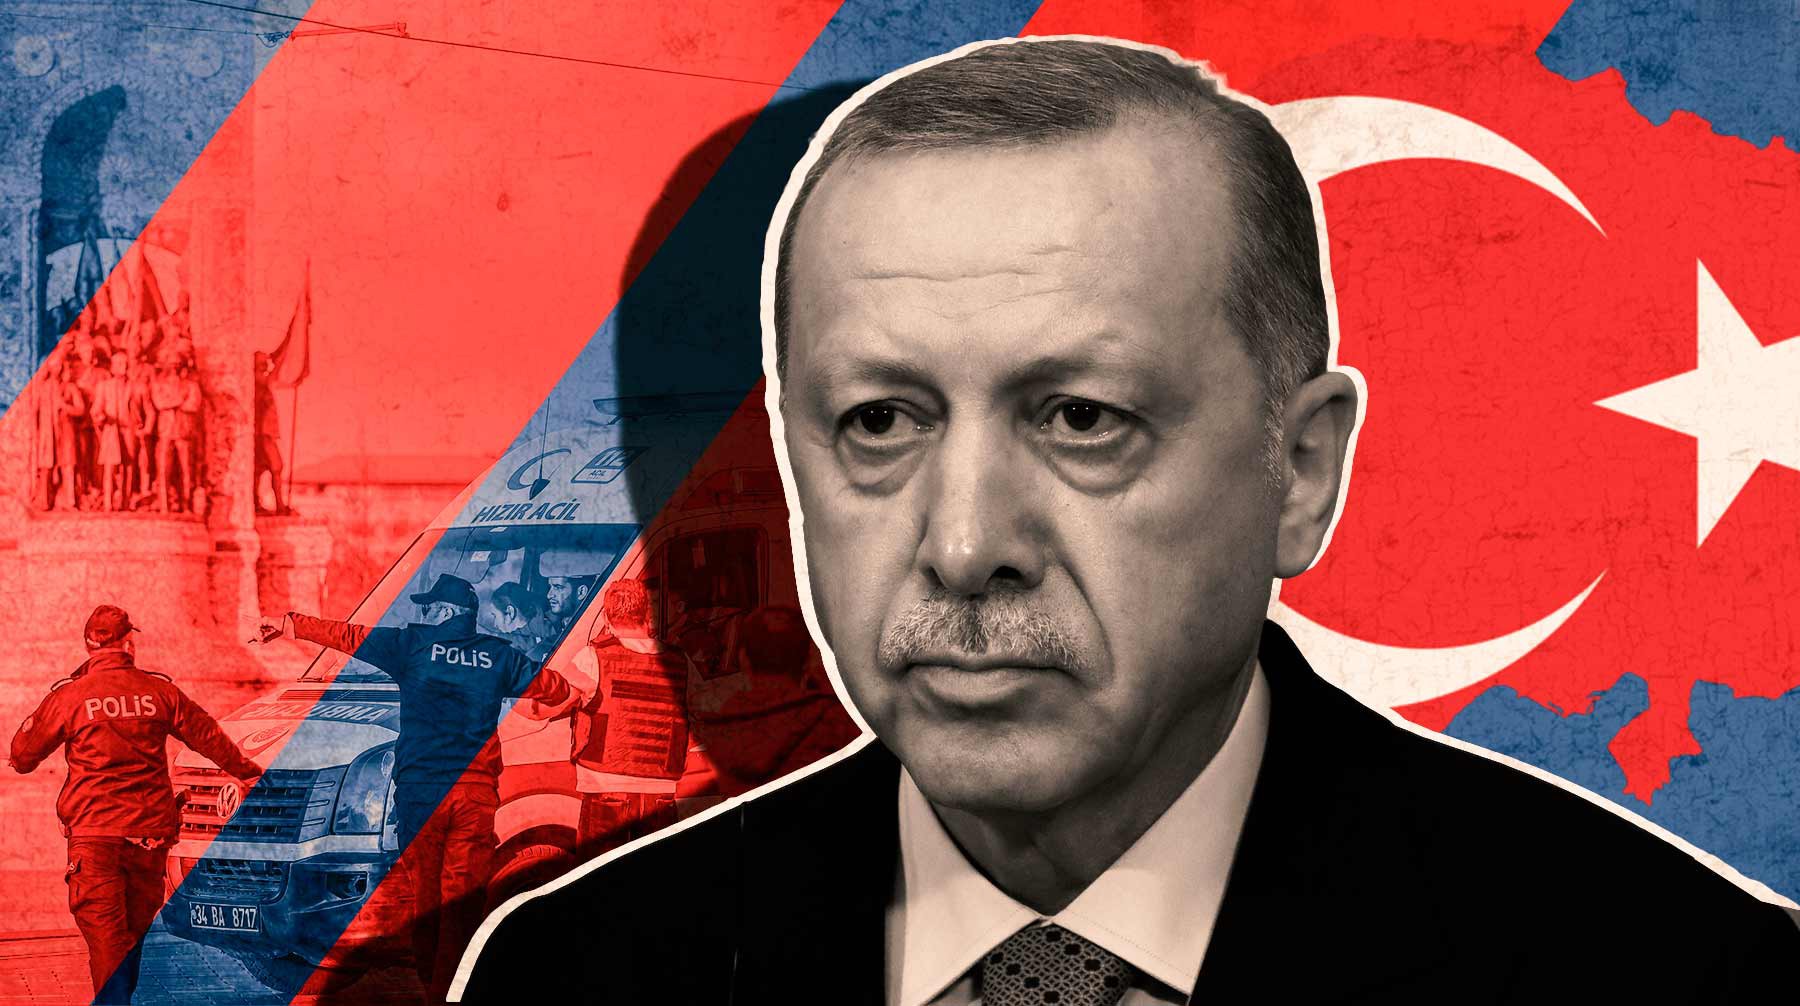 Dailystorm - Теракт в Стамбуле. Какую выгоду может извлечь для себя Эрдоган и при чем здесь Финляндия